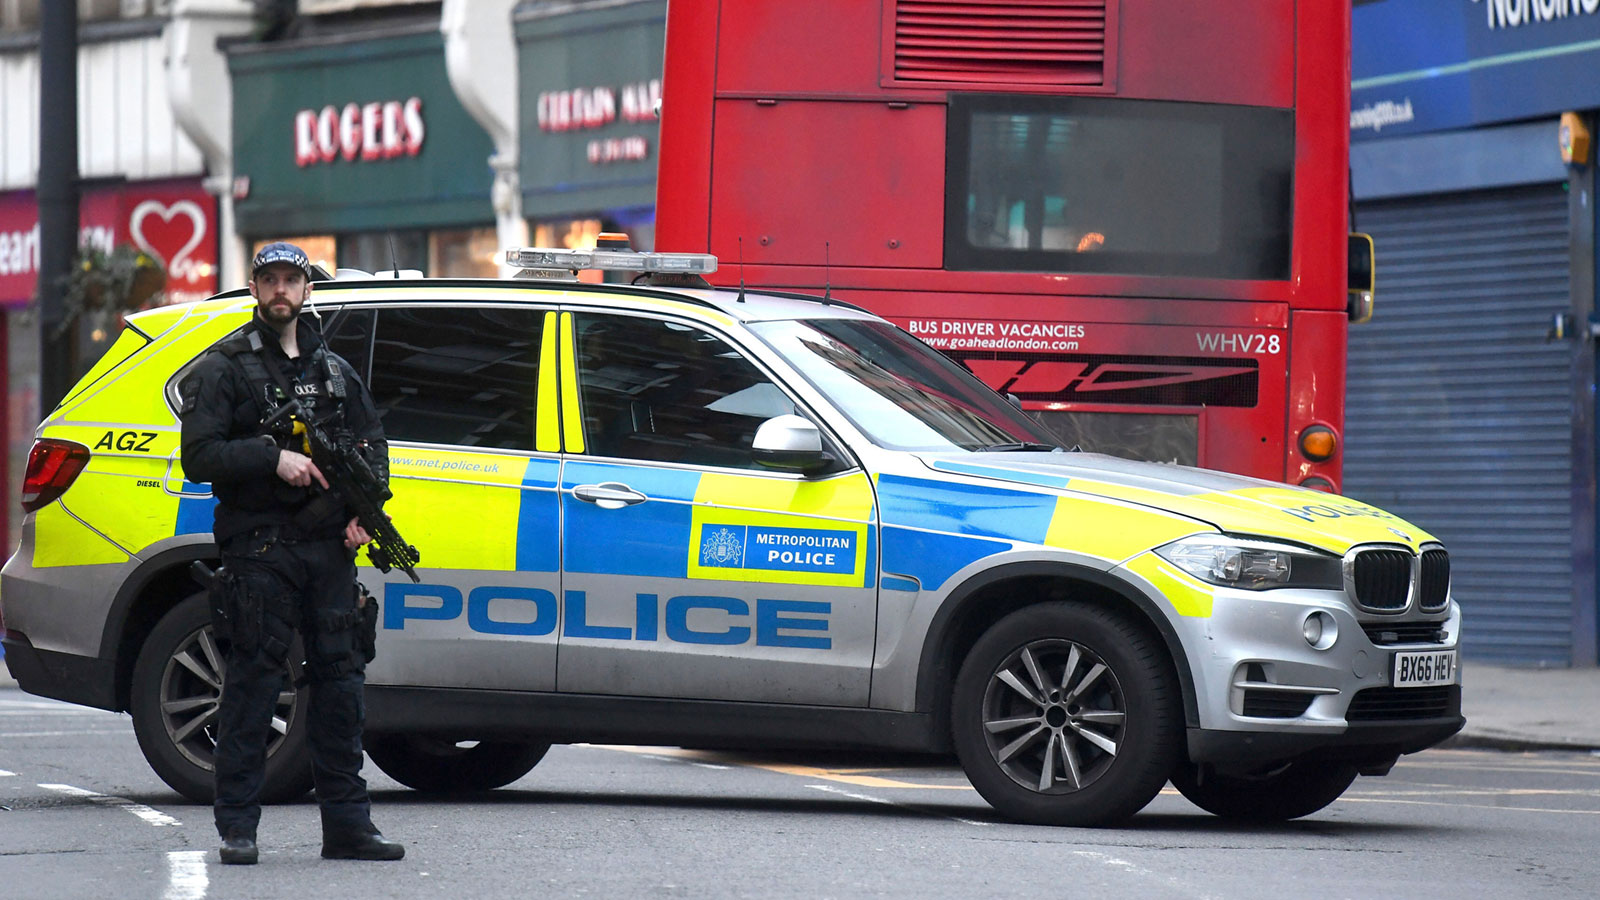 Επιθέσεις με μαχαίρι δέχτηκε η αστυνομία του Λονδίνου